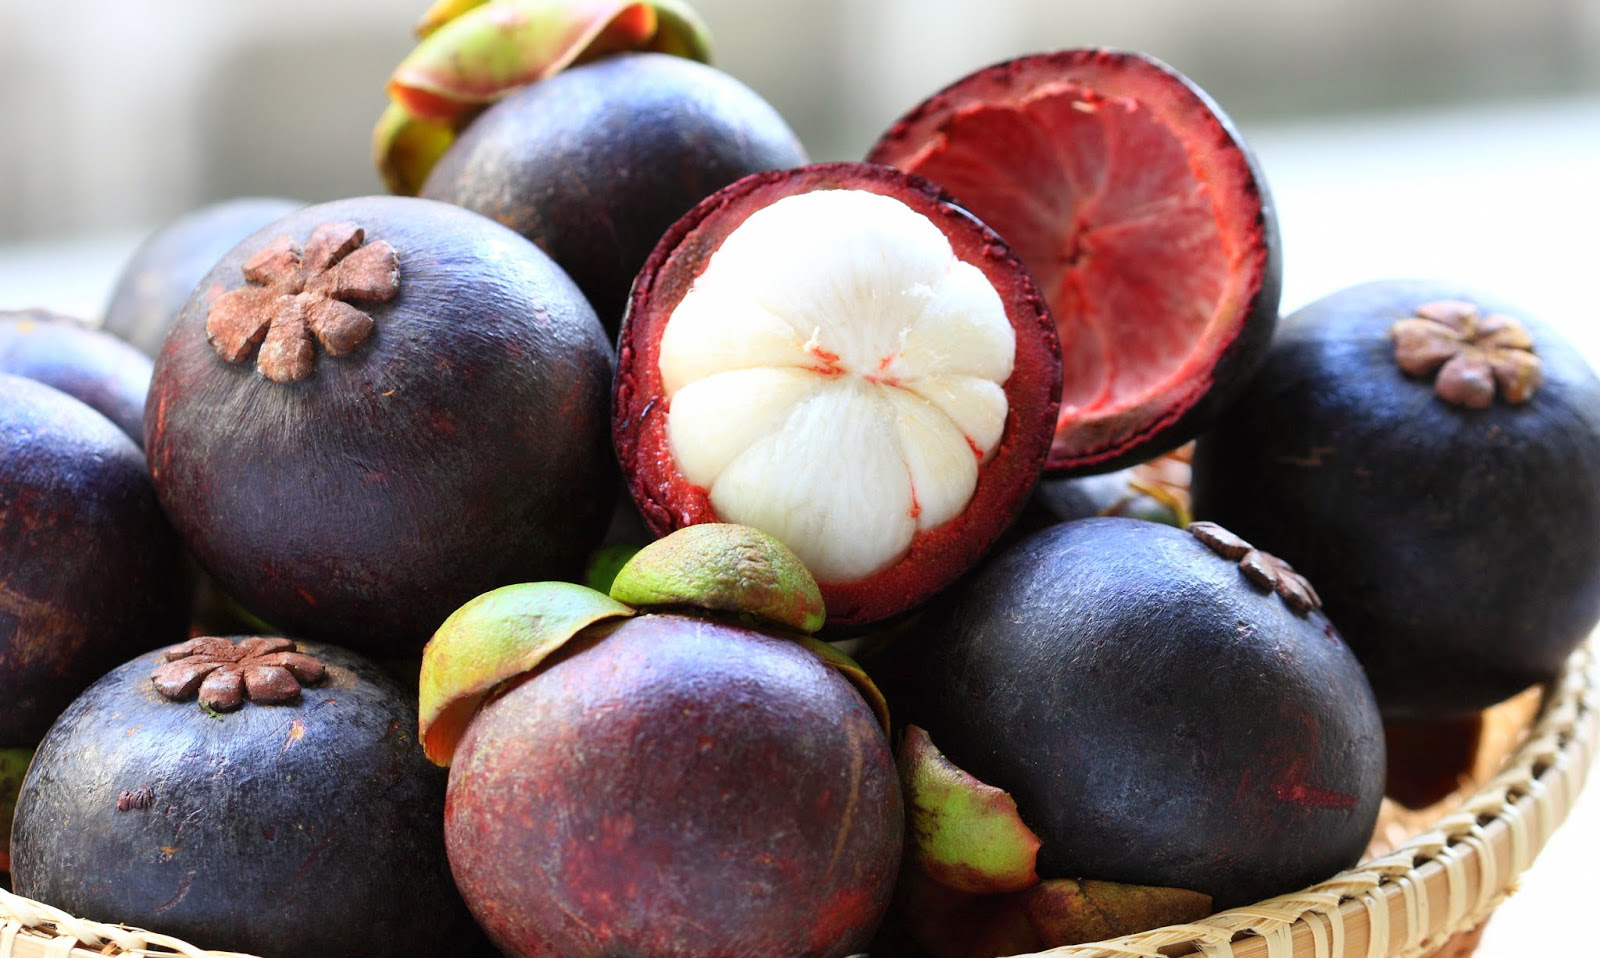 Sức khoẻ - Làm đẹp - 6 loại quả là “thuốc bổ” khi ăn buổi sáng nhưng hóa “độc dược” nếu ăn buổi tối (Hình 2).